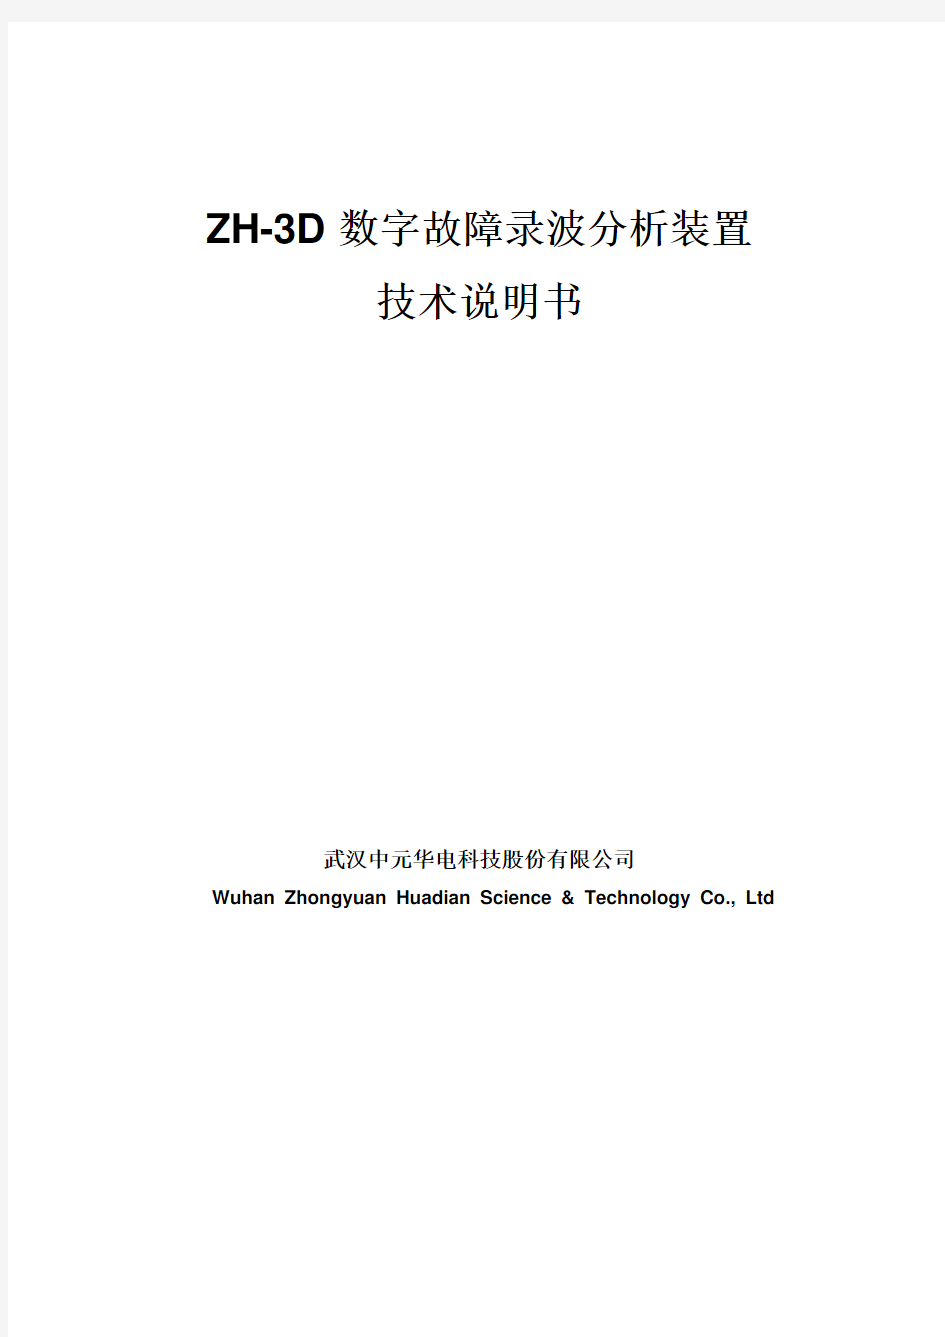 ZH-3D技术说明书090407